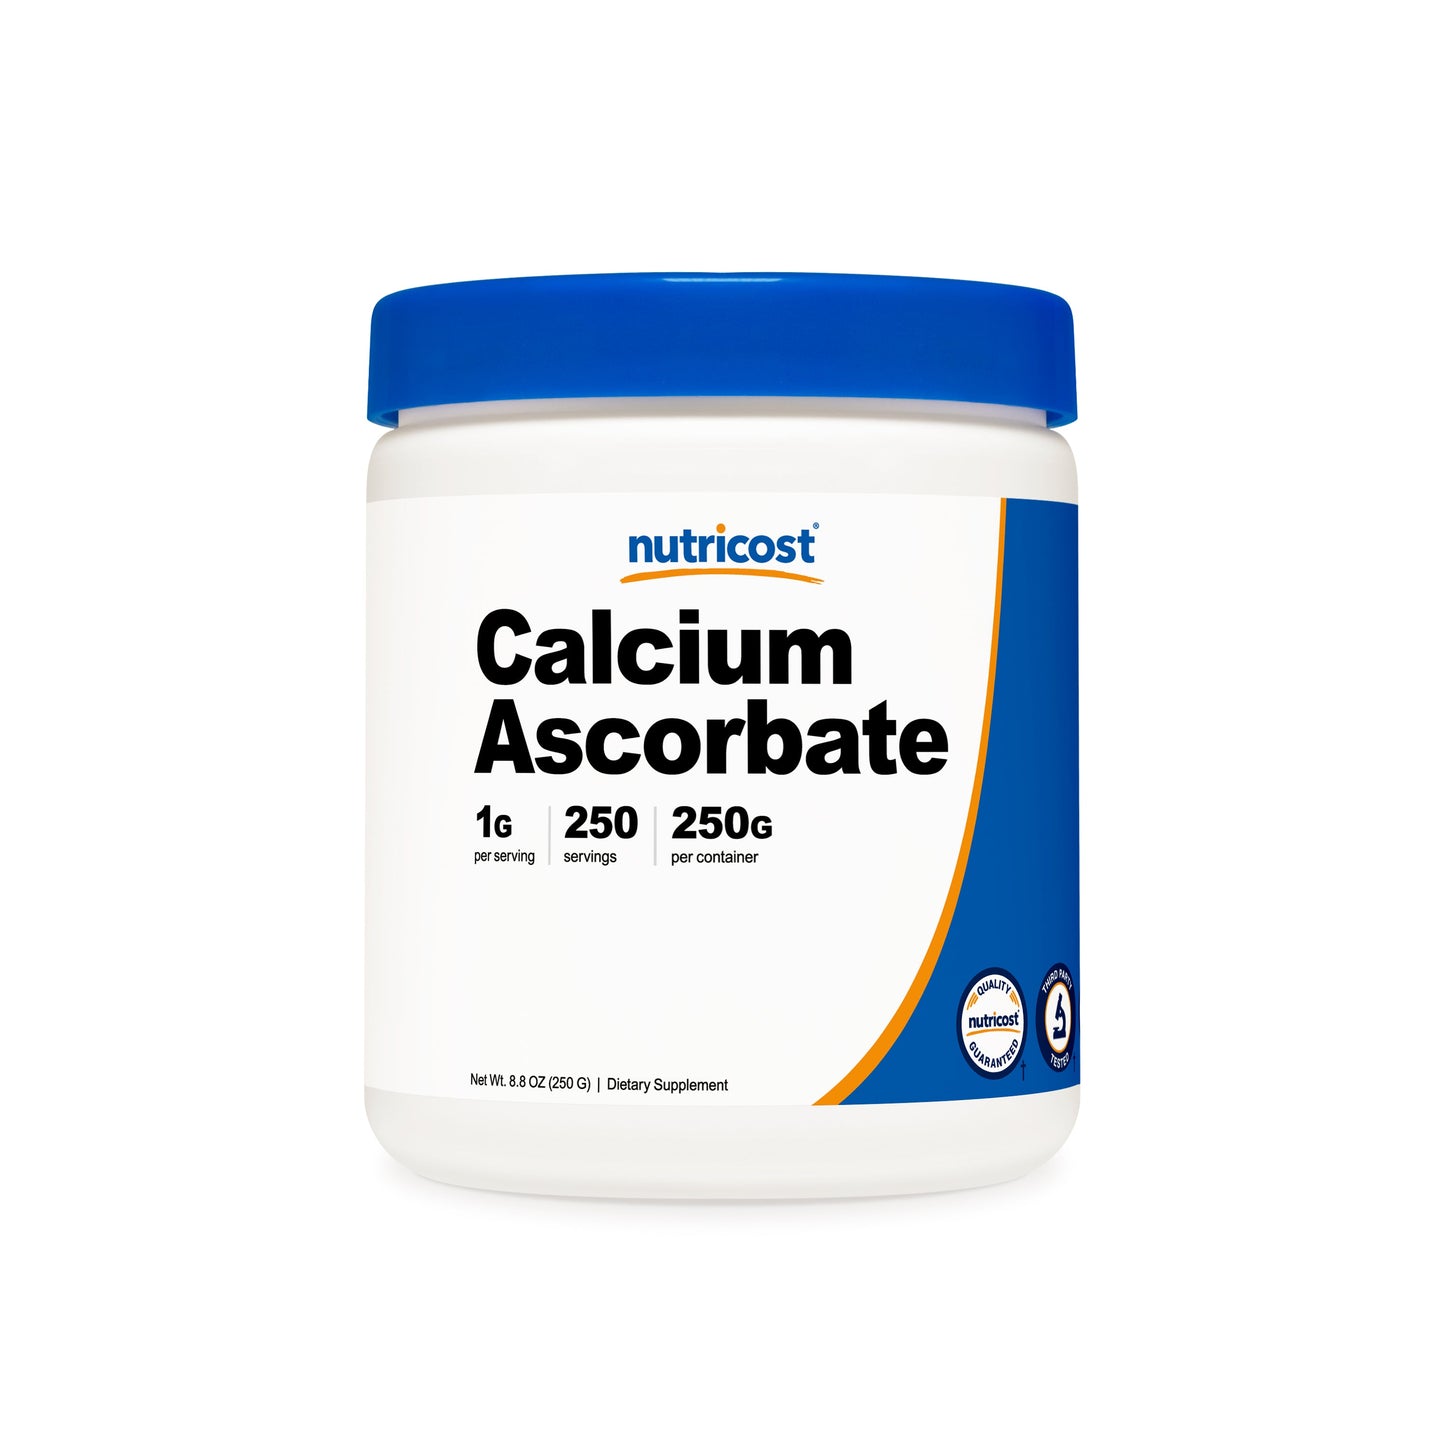 Nutricost Calcium Ascorbate Powder